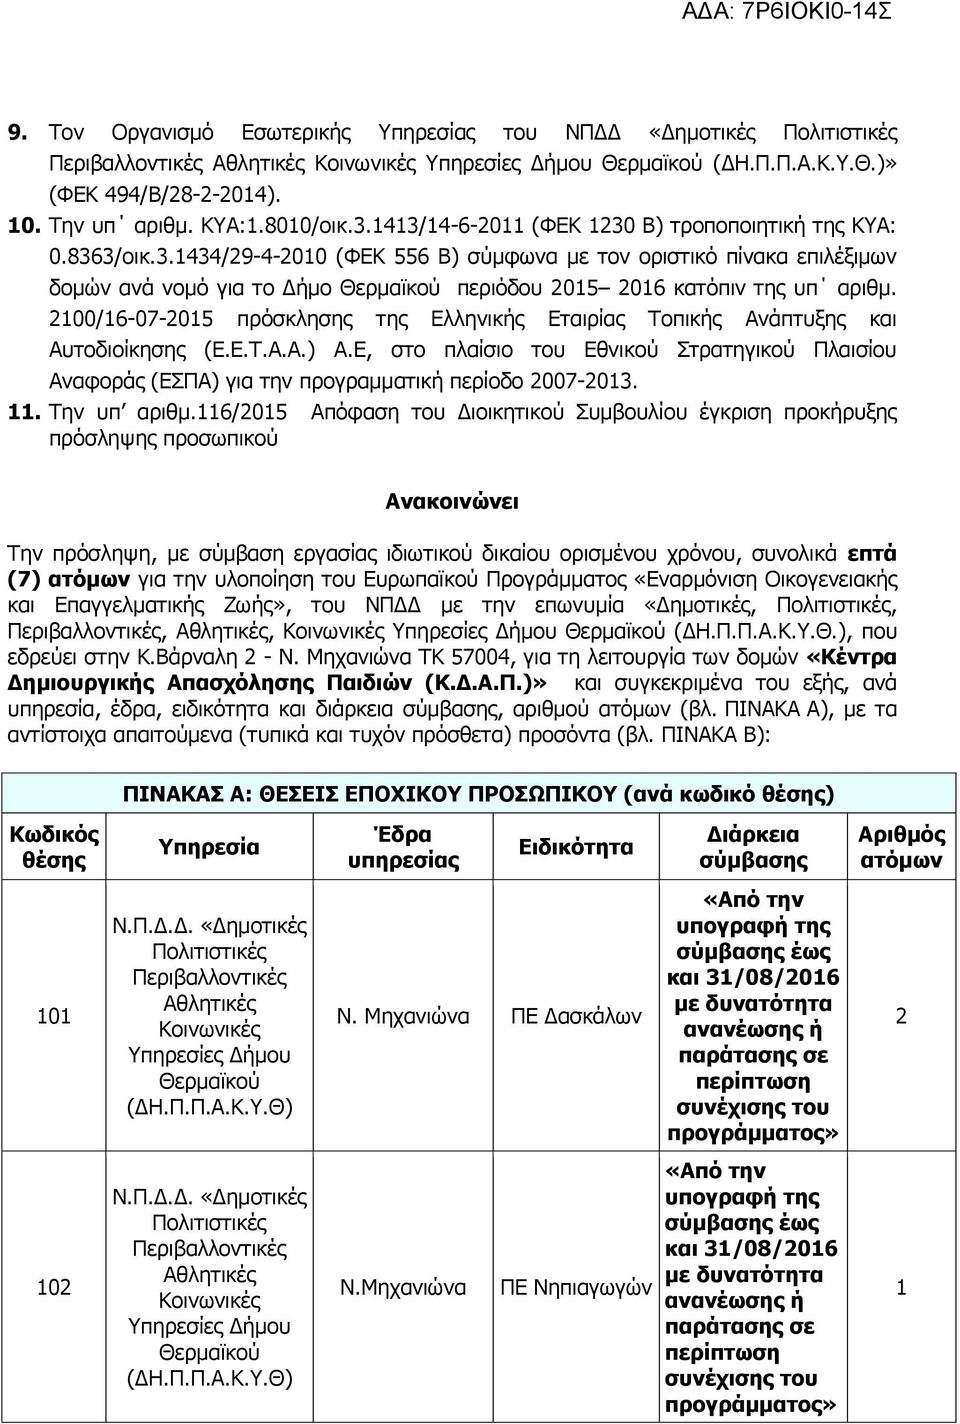 2100/16-07-2015 πρόσκλησης της Ελληνικής Εταιρίας Τοπικής Ανάπτυξης και Αυτοδιοίκησης (Ε.Ε.Τ.Α.Α.) Α.